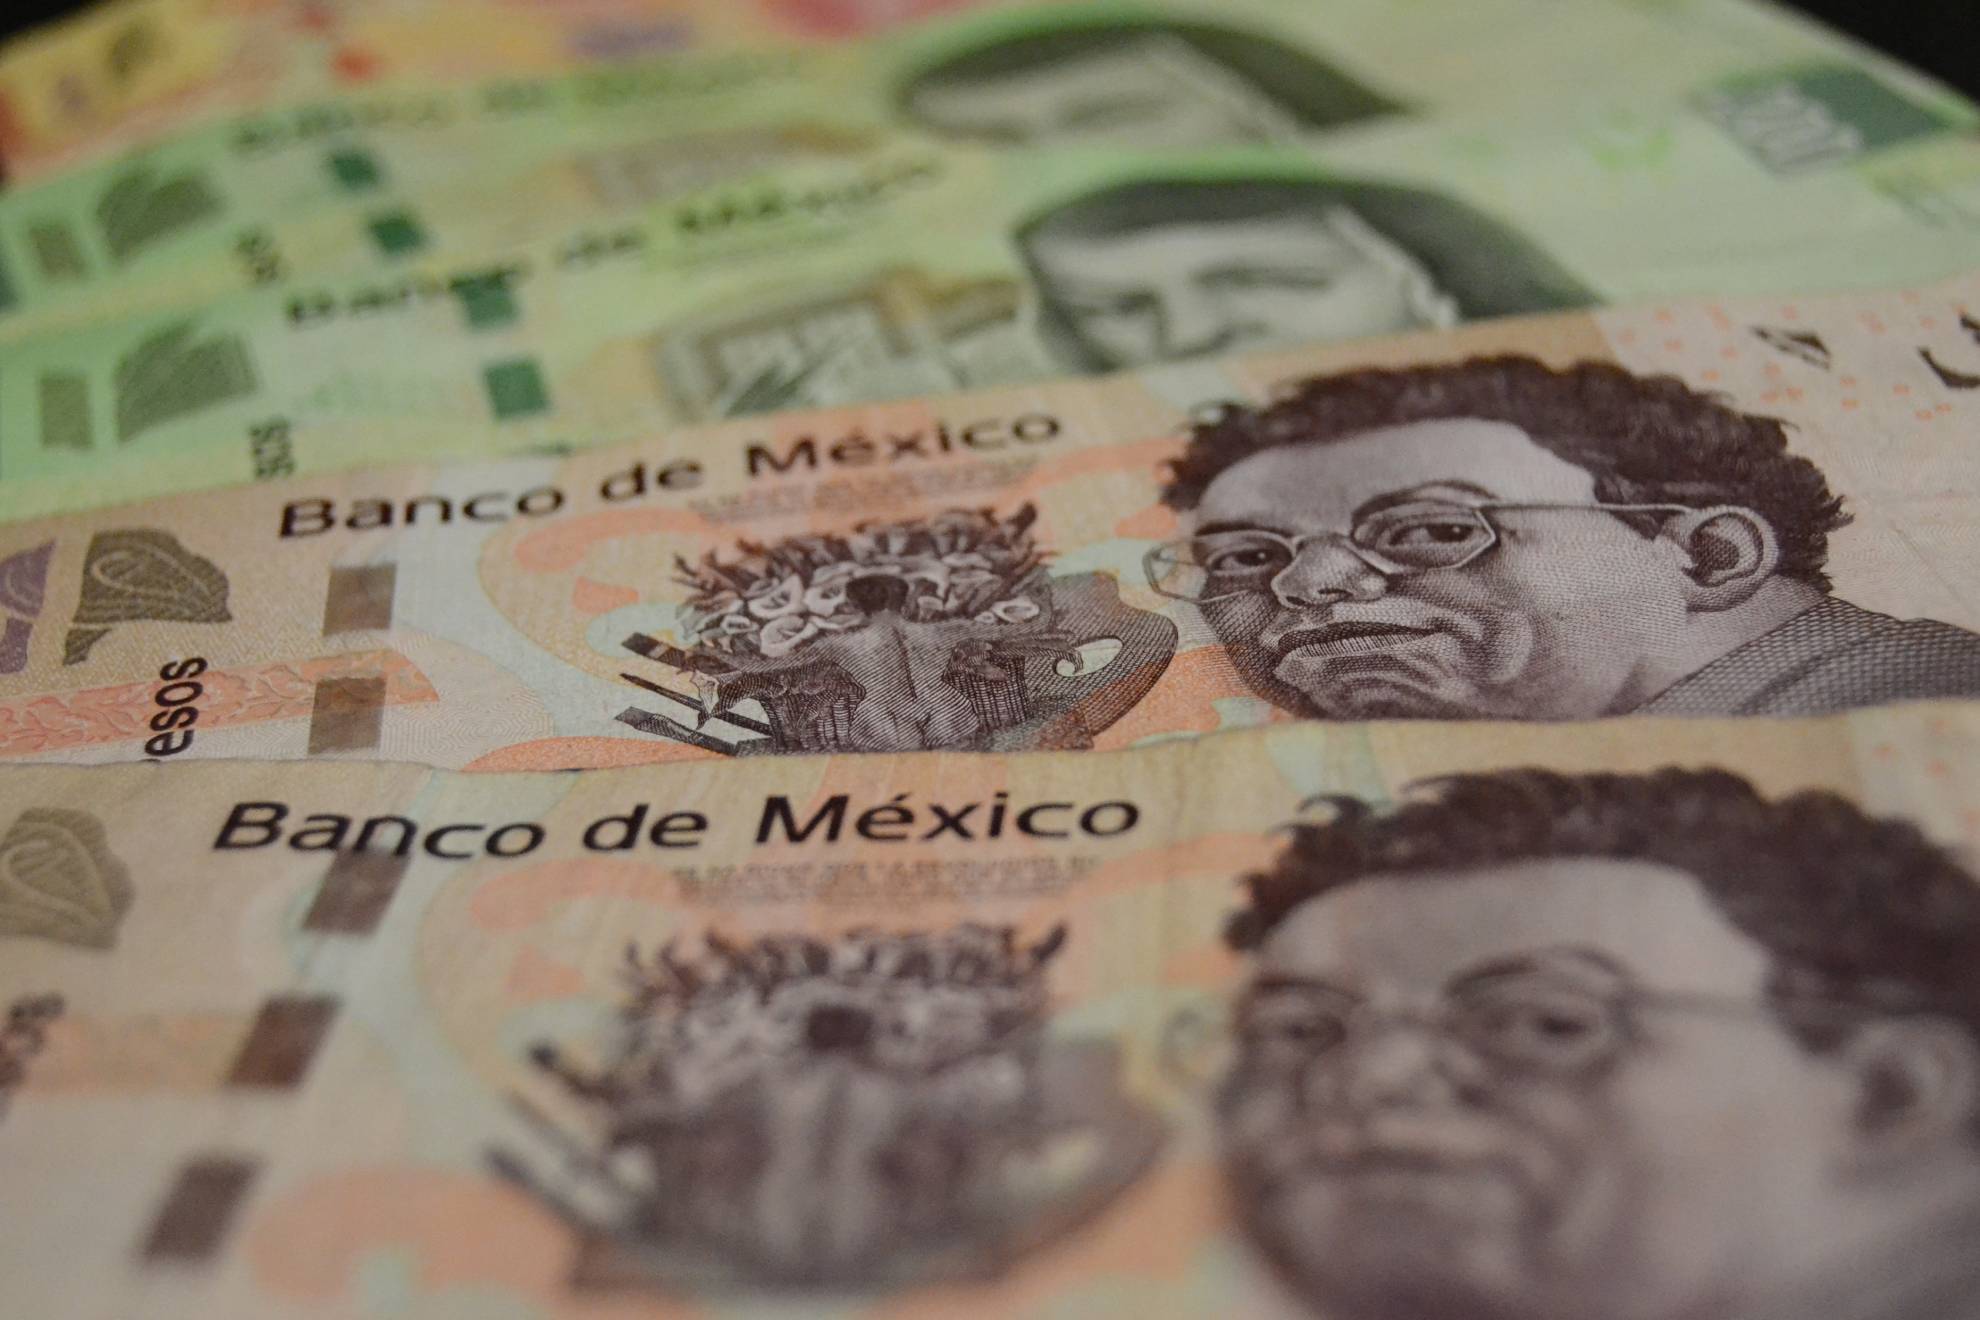 Las transacciones en Mxico son de suma importancia en bancos; por ello se preguntan si abrirn el 12 de diciembre